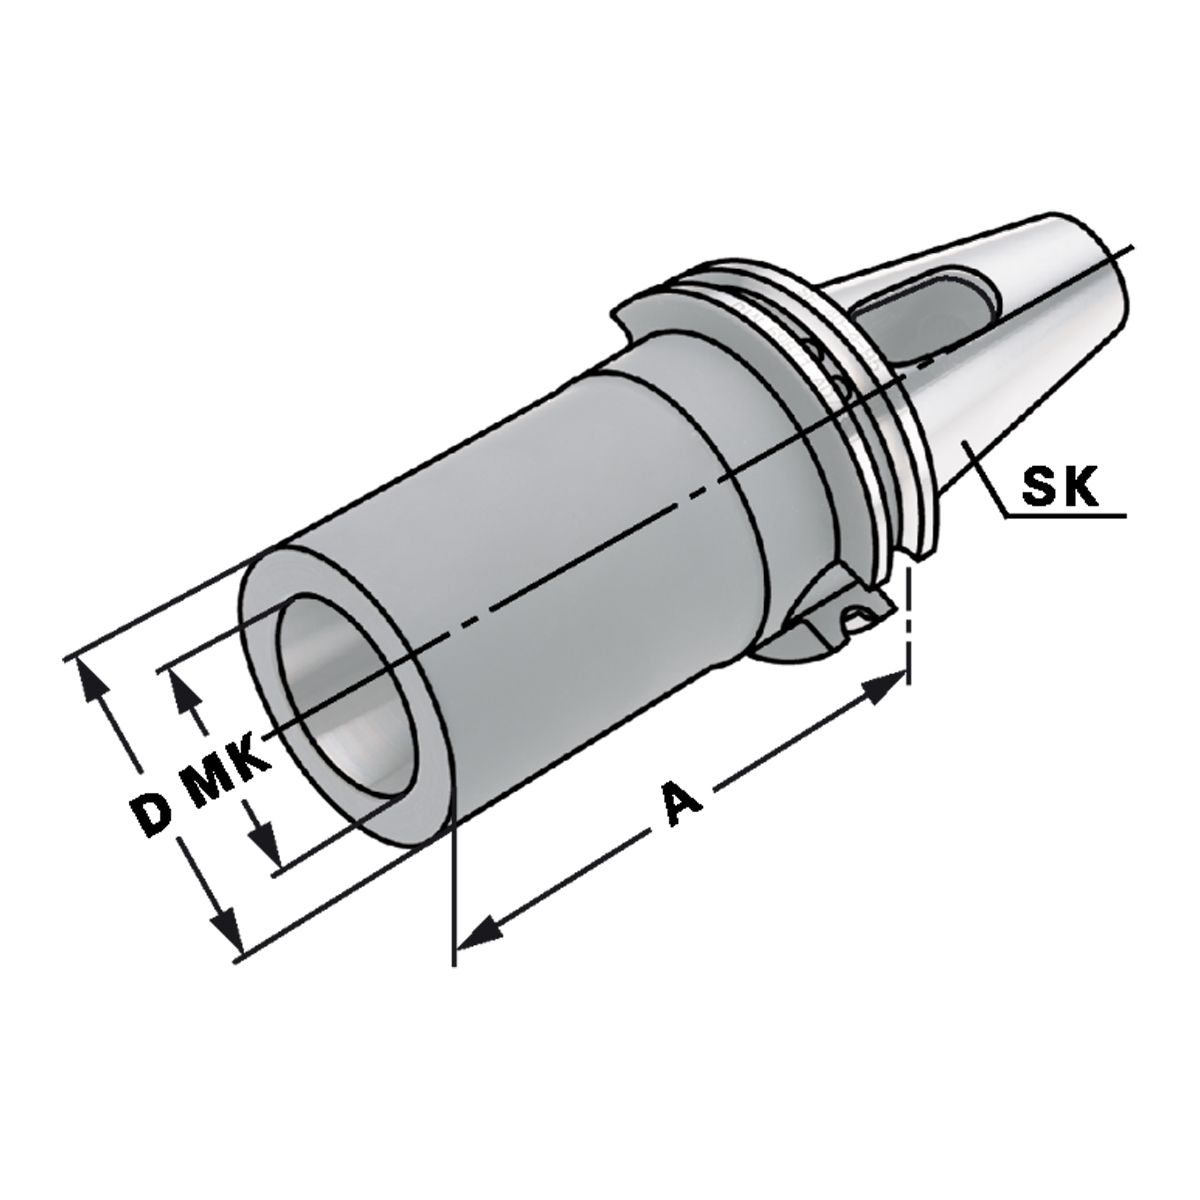 Zwischenhülse SK 30-1-50 für MK mit Austreiblappen DIN 6383